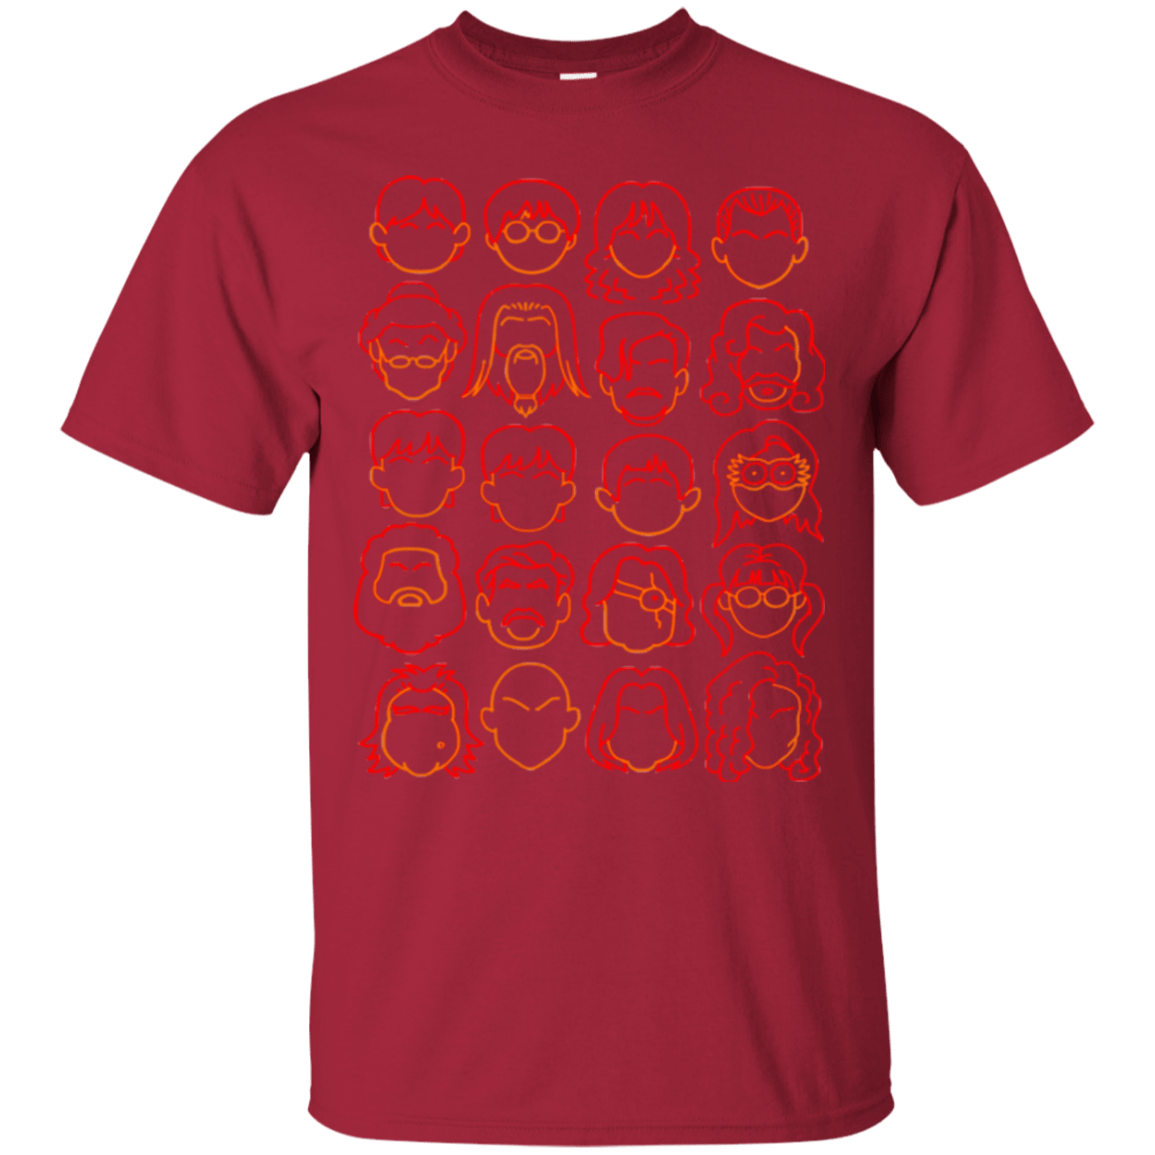 Cardinals PNG Designs for T Shirt & Merch